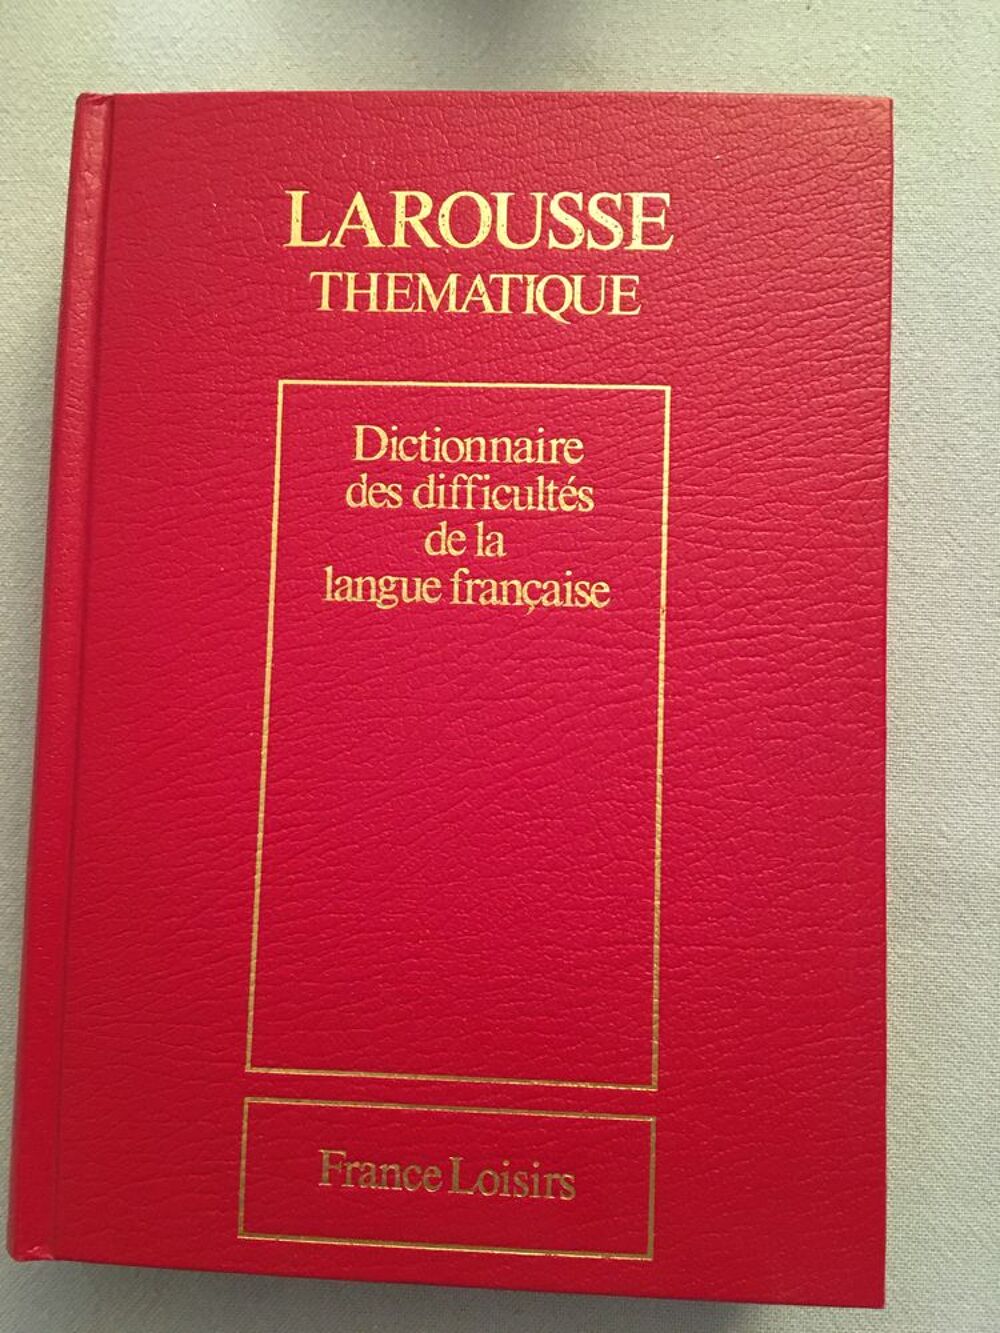 Encyclop&eacute;dies Larousse 